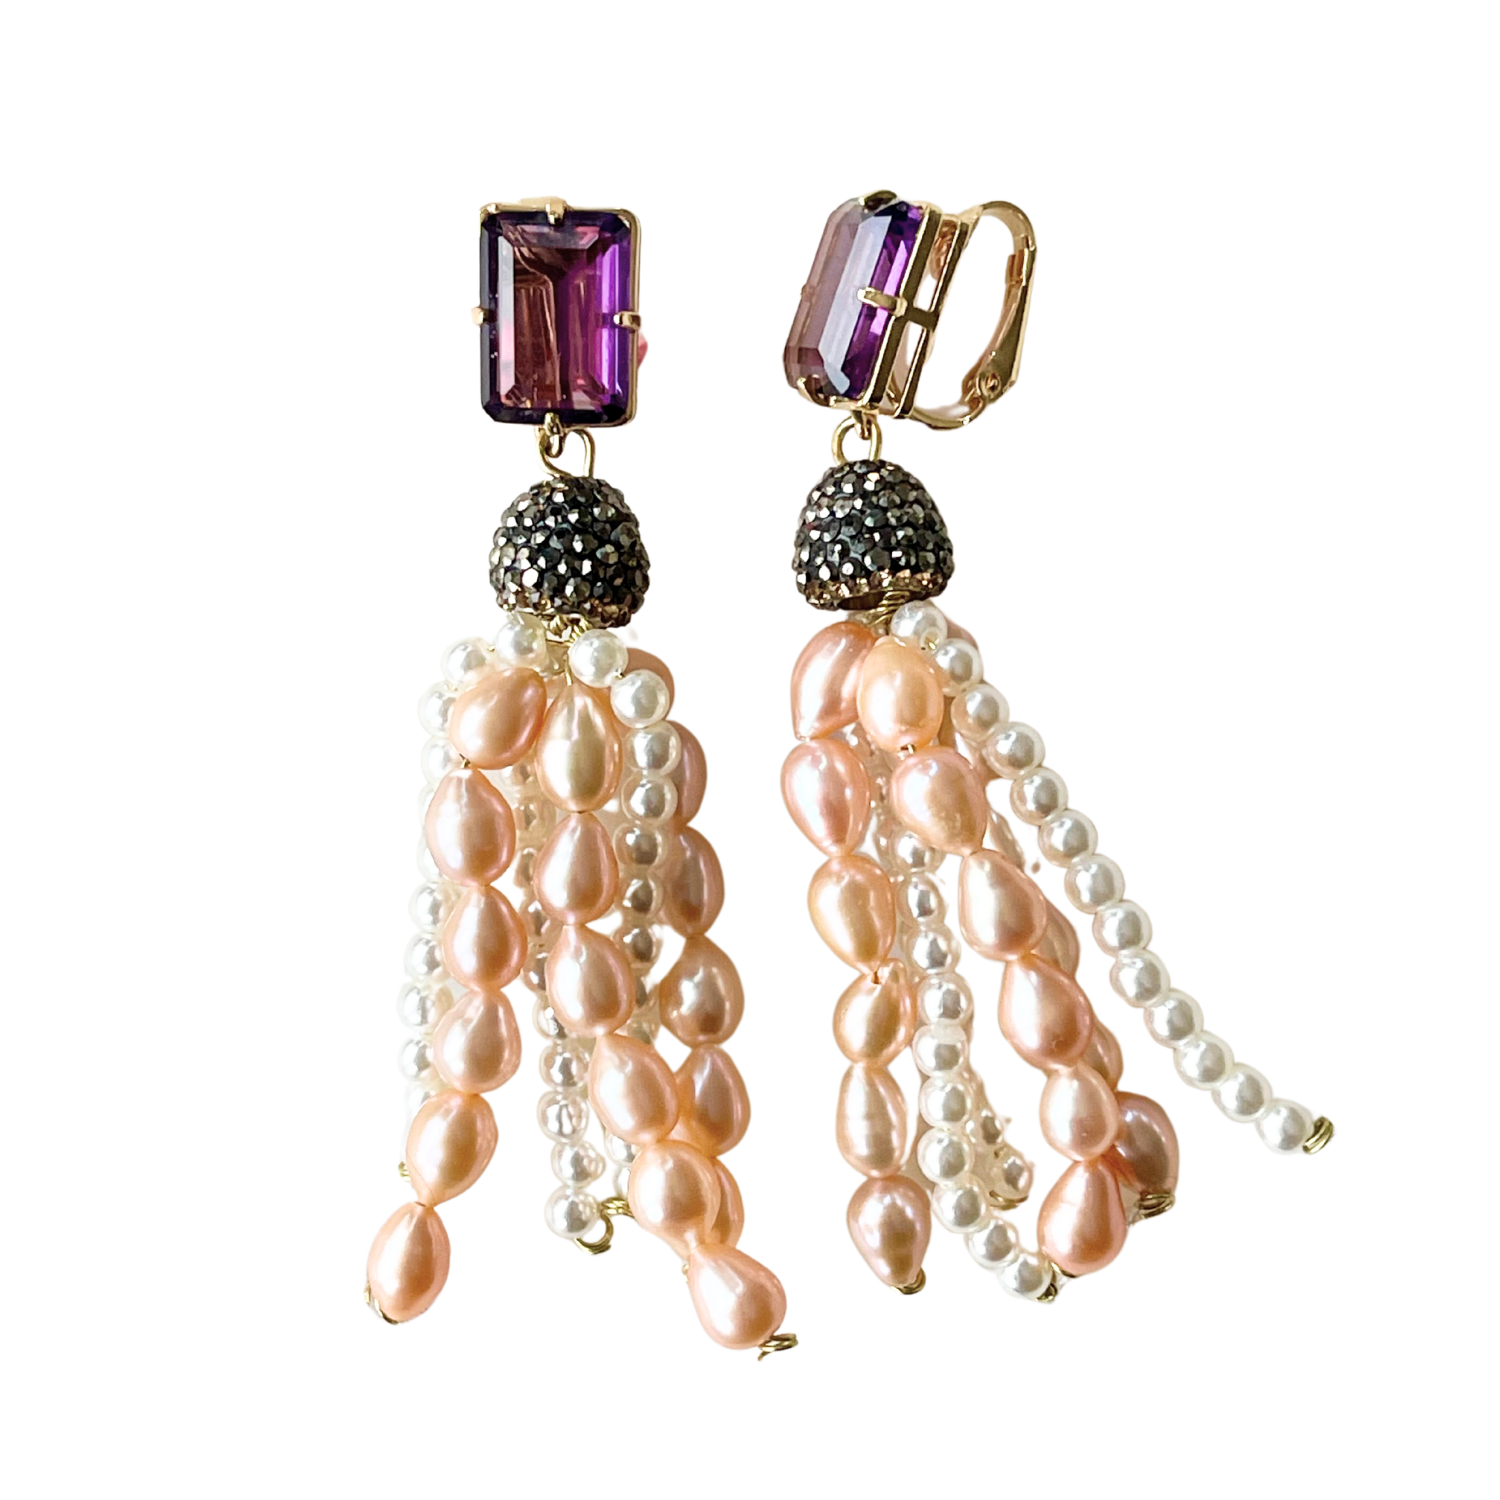 Perlen Ohrclips ANTONIETA mit Kristallen Amethist und Süßwasserperlen - Alessandra Schmidt Jewelry